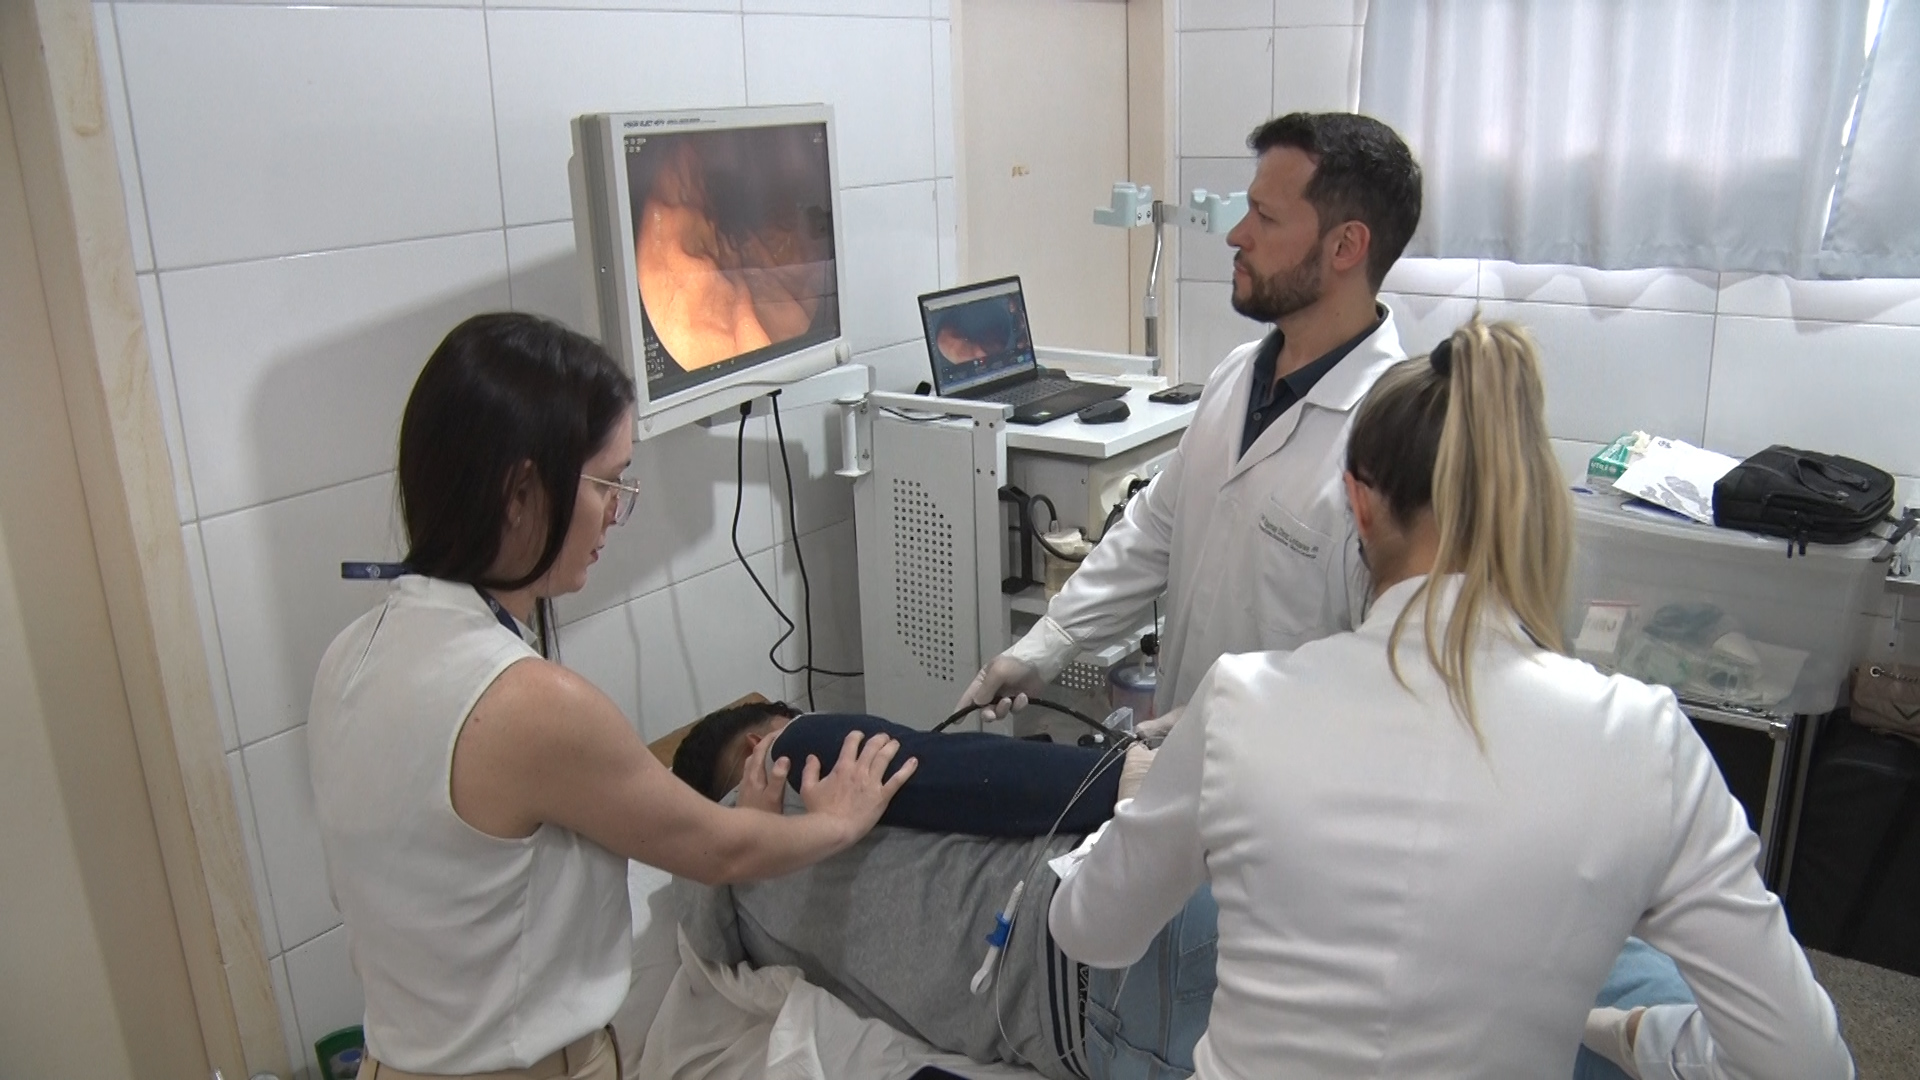 Secretaria Municipal de Saúde de Guarantã do Norte passa a oferecer exames de Endoscopia e Colonoscopia de forma gratuita.